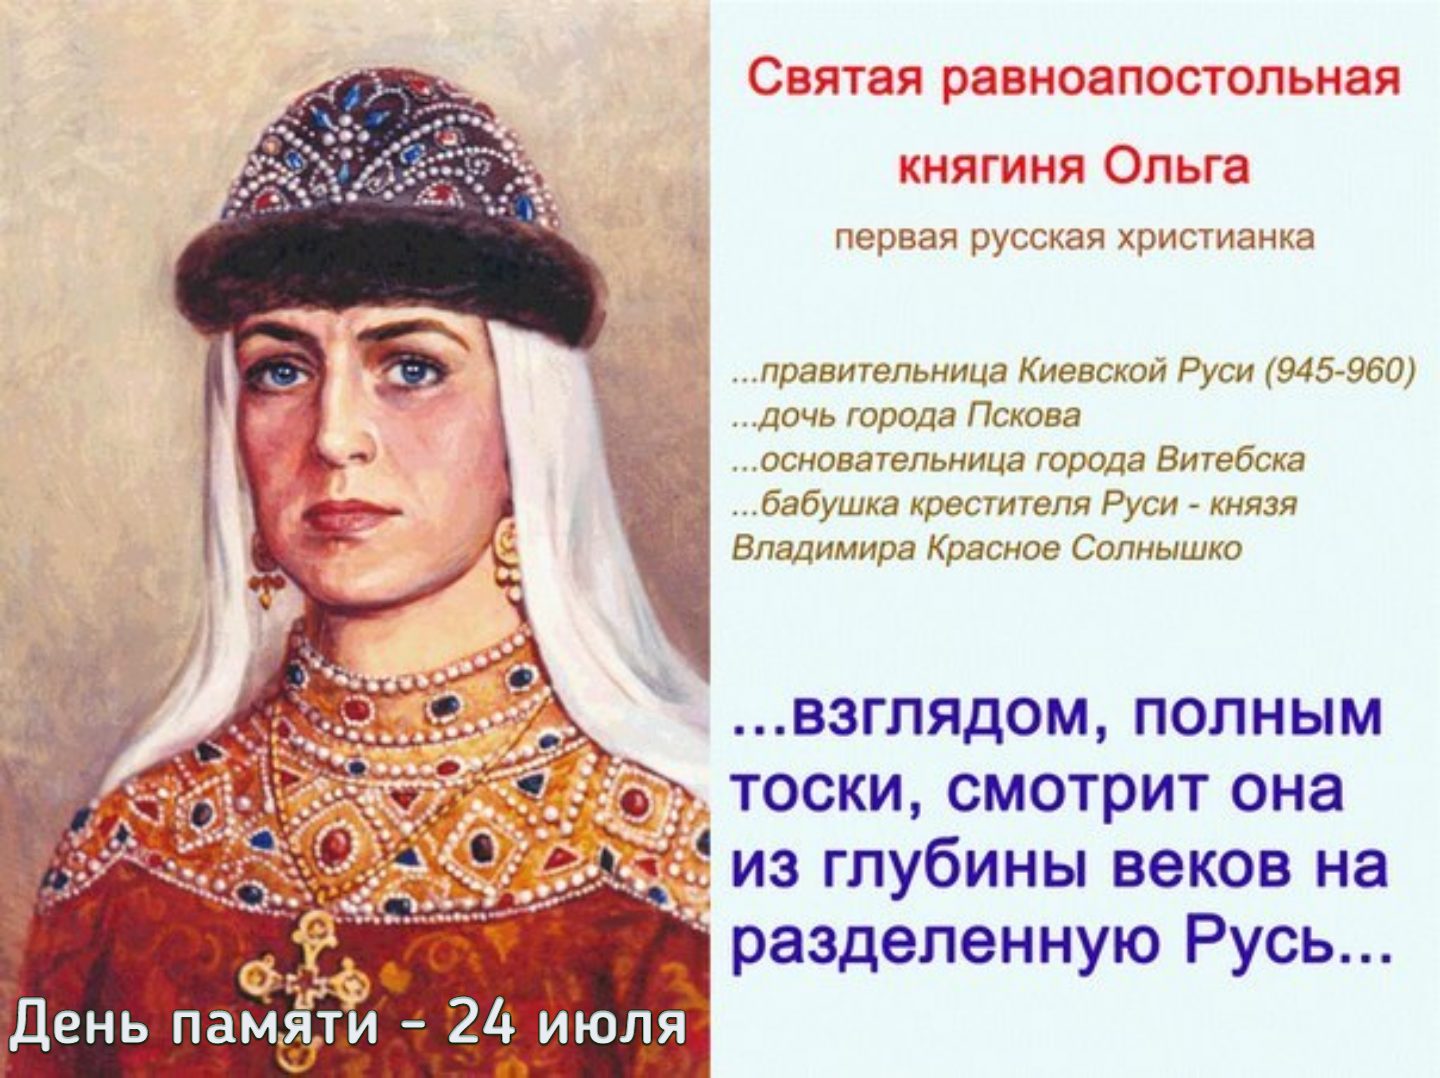 24 Июля день памяти Святой равноапостольной Великой княгини Ольги